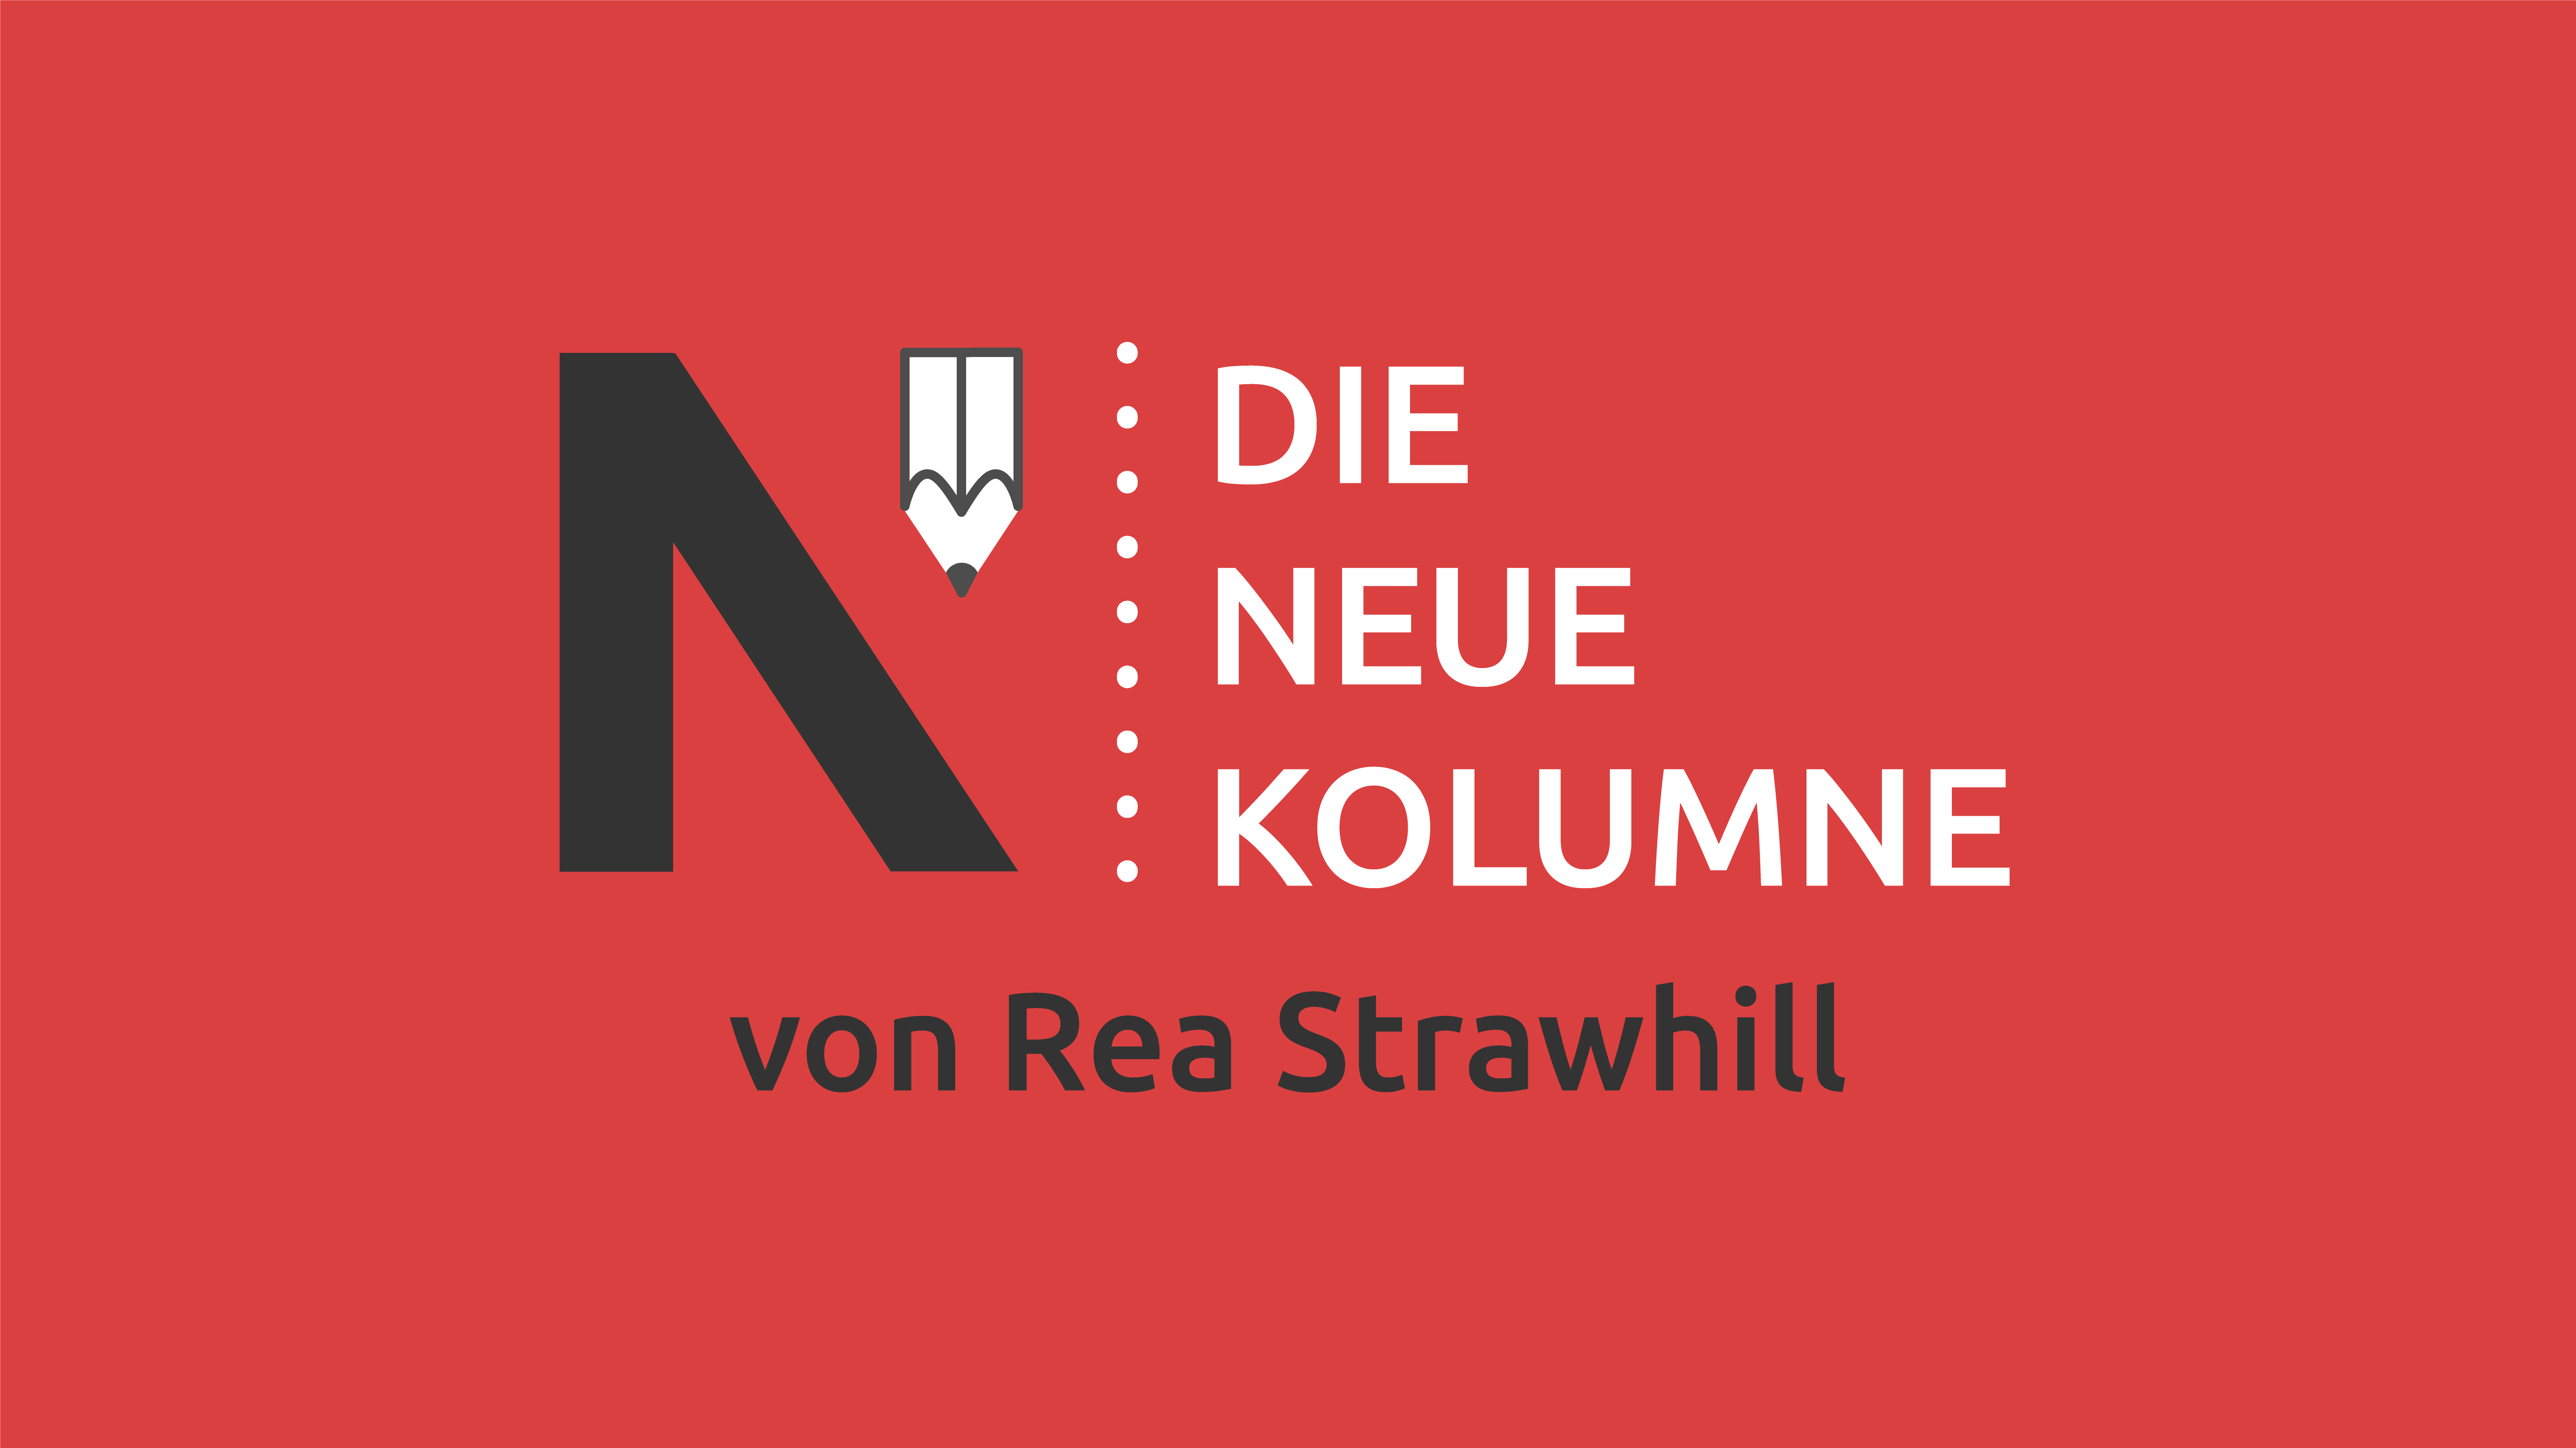 Das Logo von Die Neue Norm auf rotem Grund. Rechts davon steht: Die Neue Kolumne. Unten steht: Von Rea Strawhill.